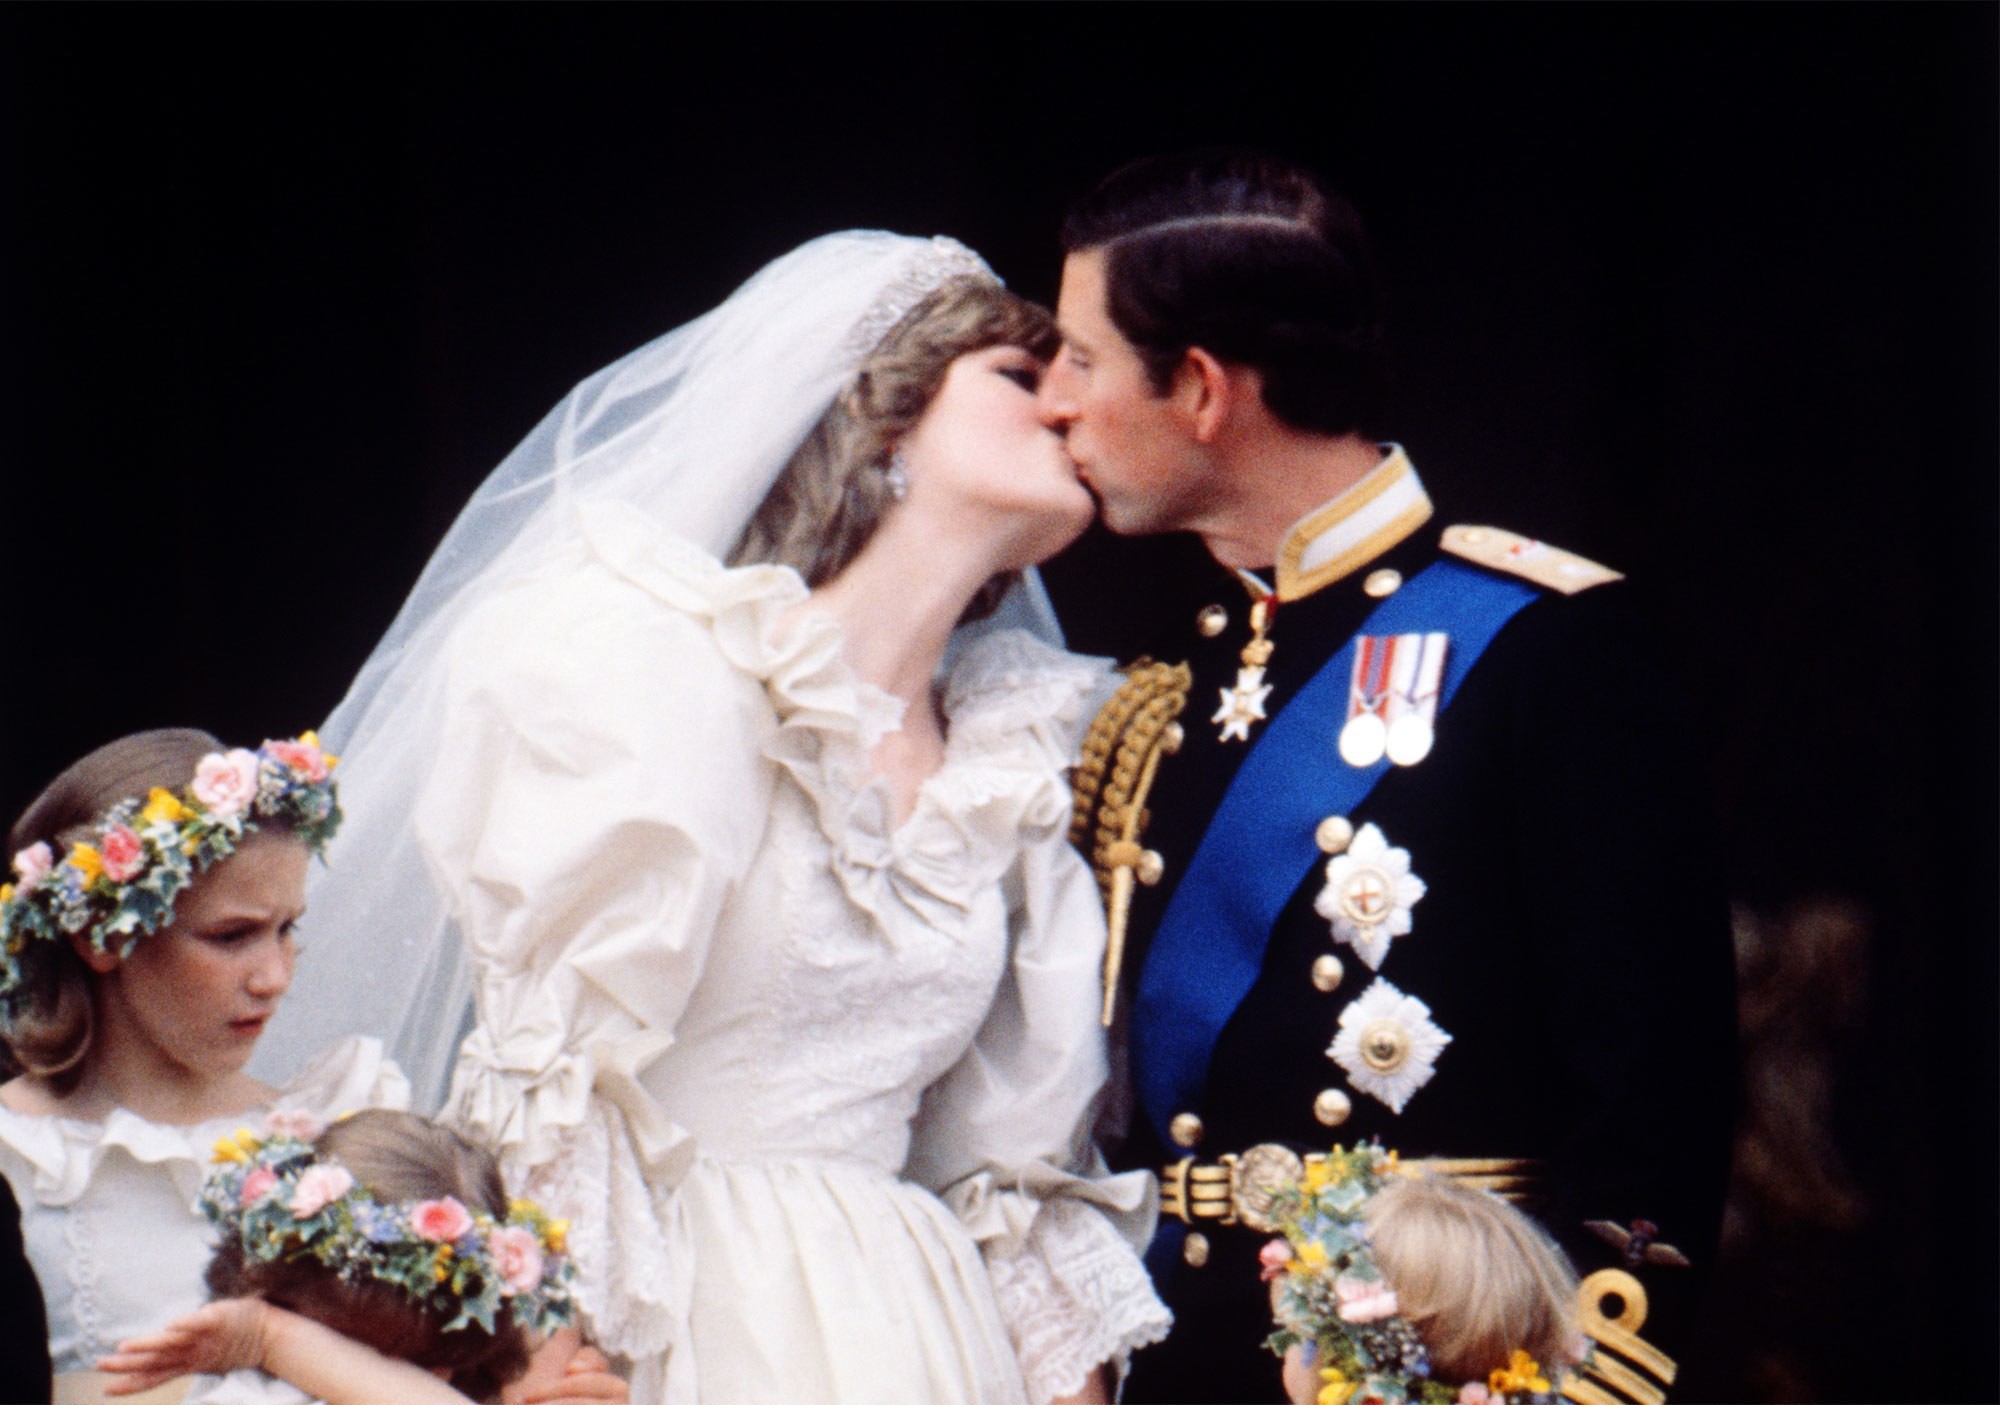 Những hình ảnh tuyệt đẹp trong đám cưới cố Công nương Diana bất ngờ được chia sẻ mạnh trên MXH 2